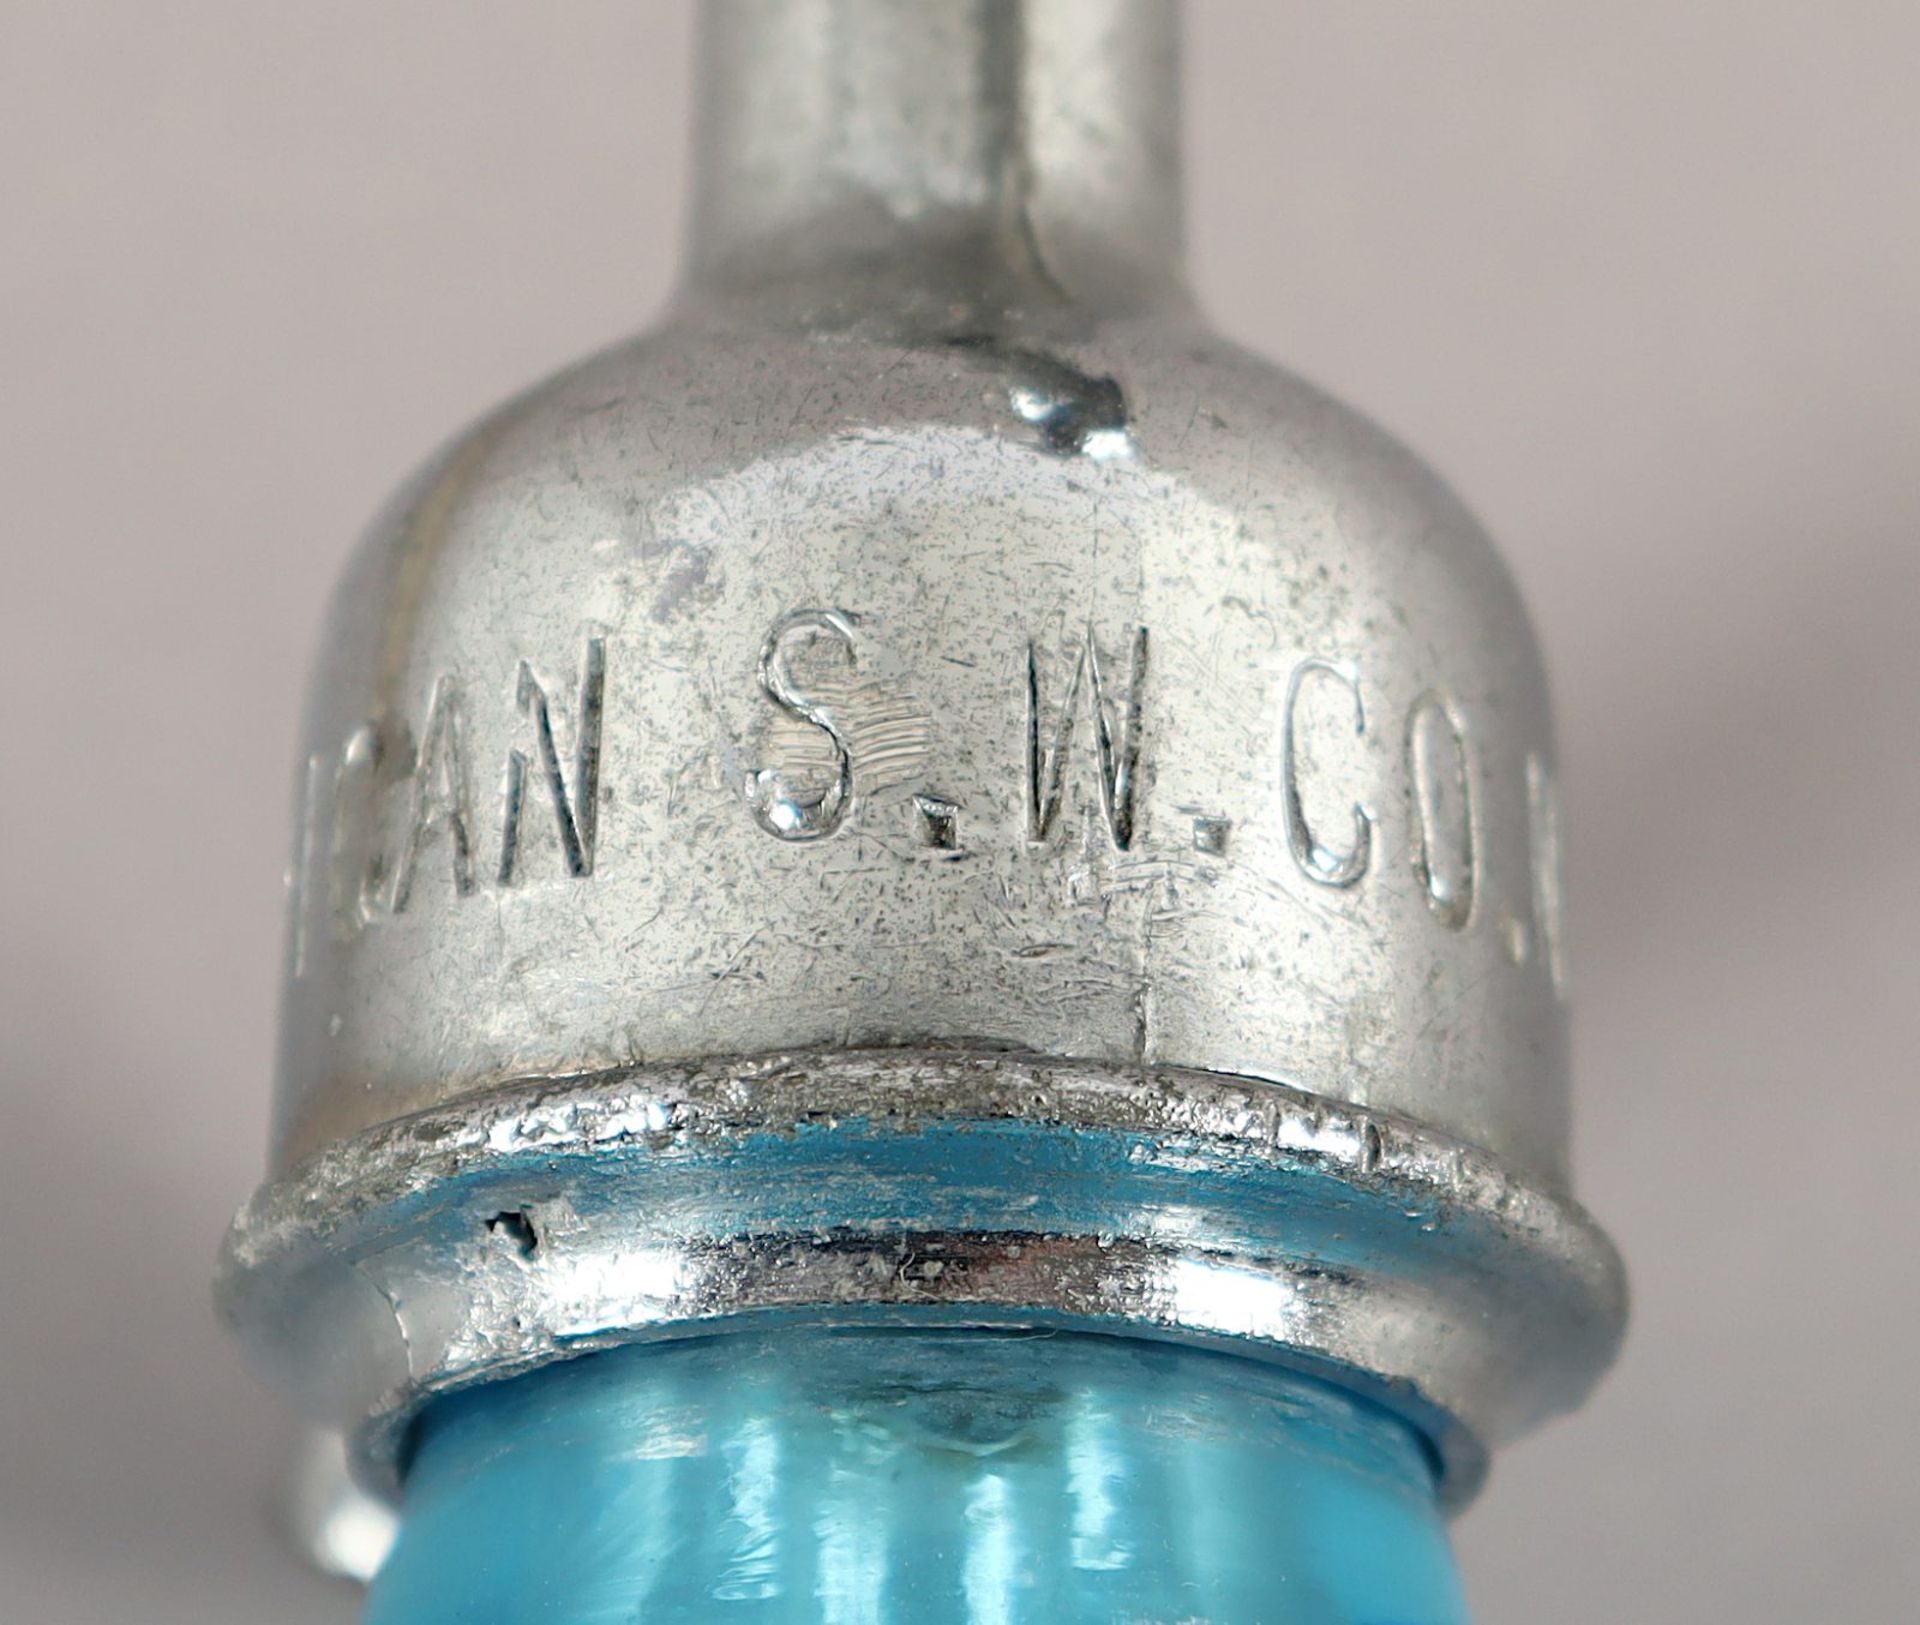 Sodaflasche, USA, um 1920/30 - Bild 3 aus 3